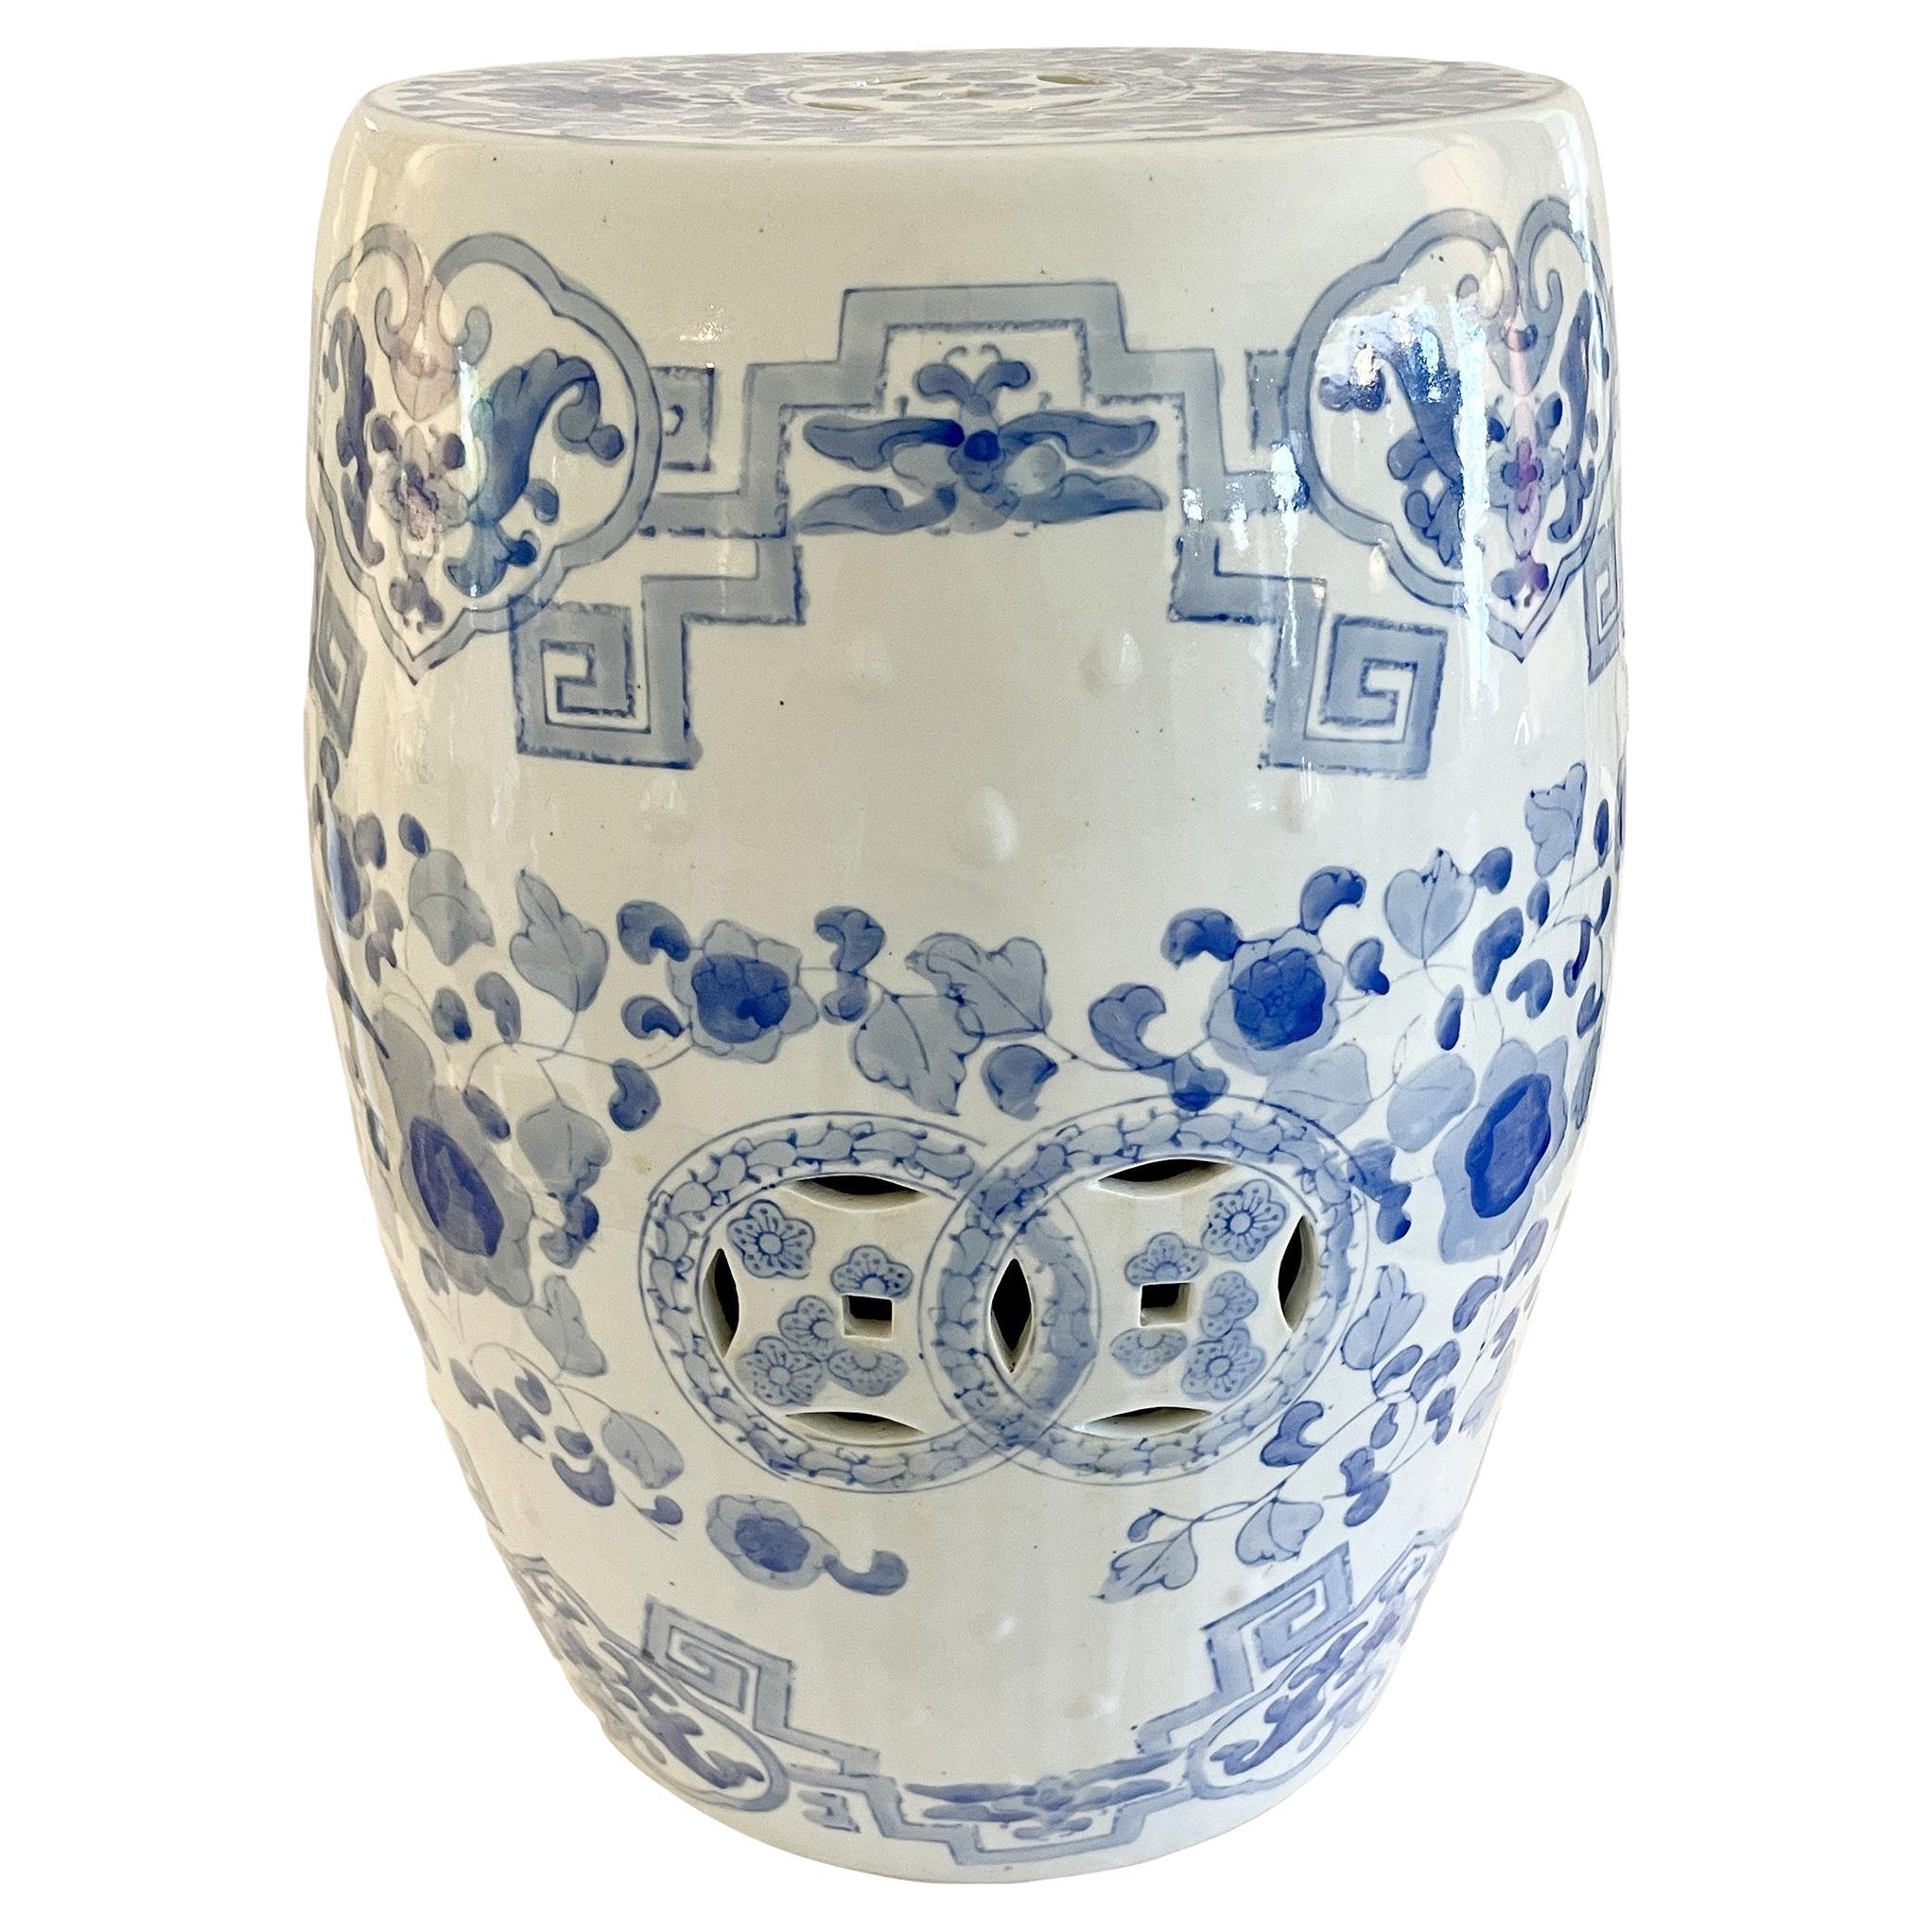 Schöner blauer und weißer Keramik-Gartensitz mit Zeichnungen. Tolle Ergänzung zu Ihrem